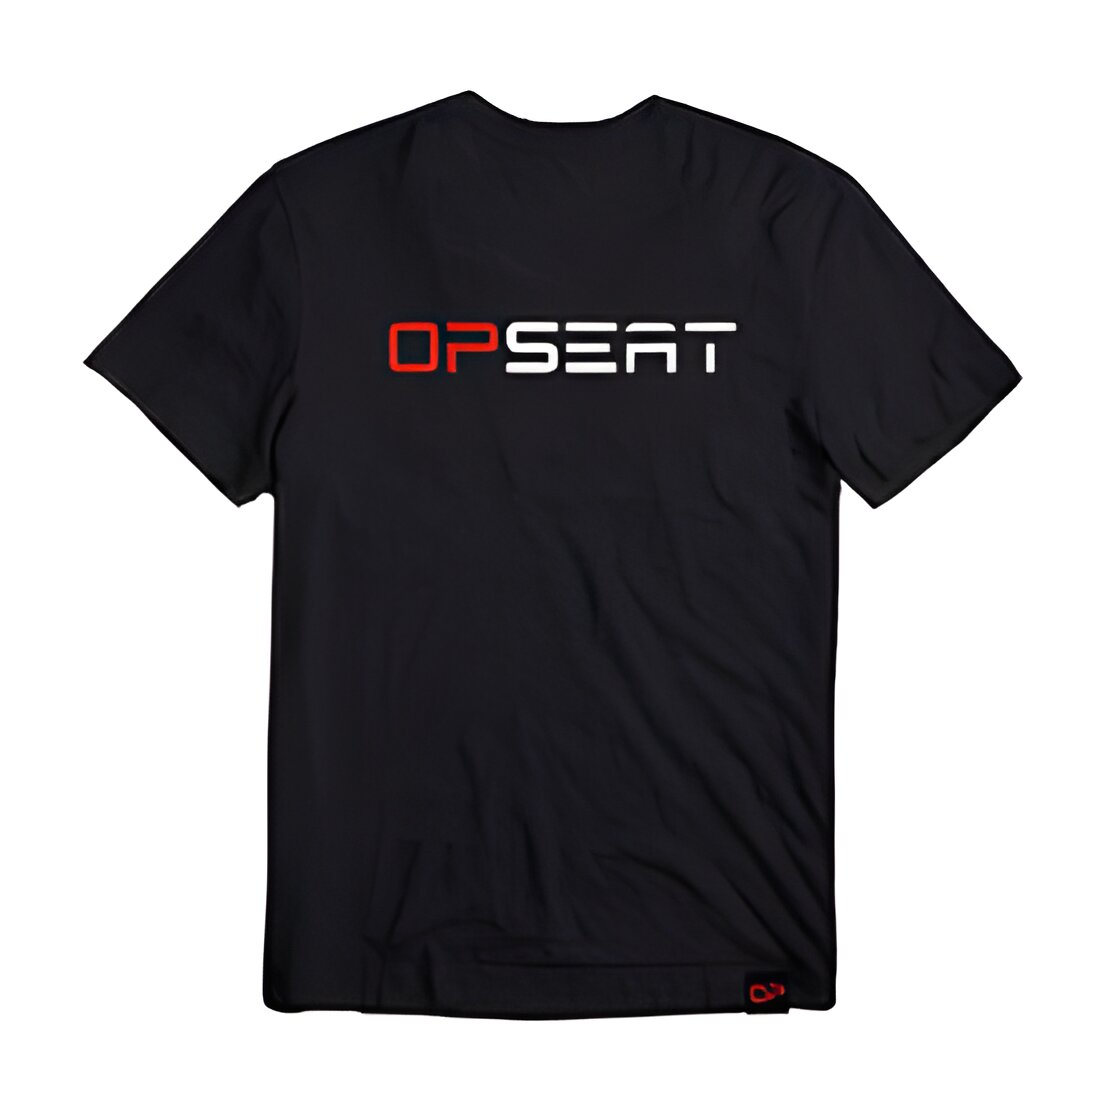 Free OPSEAT T-Shirt